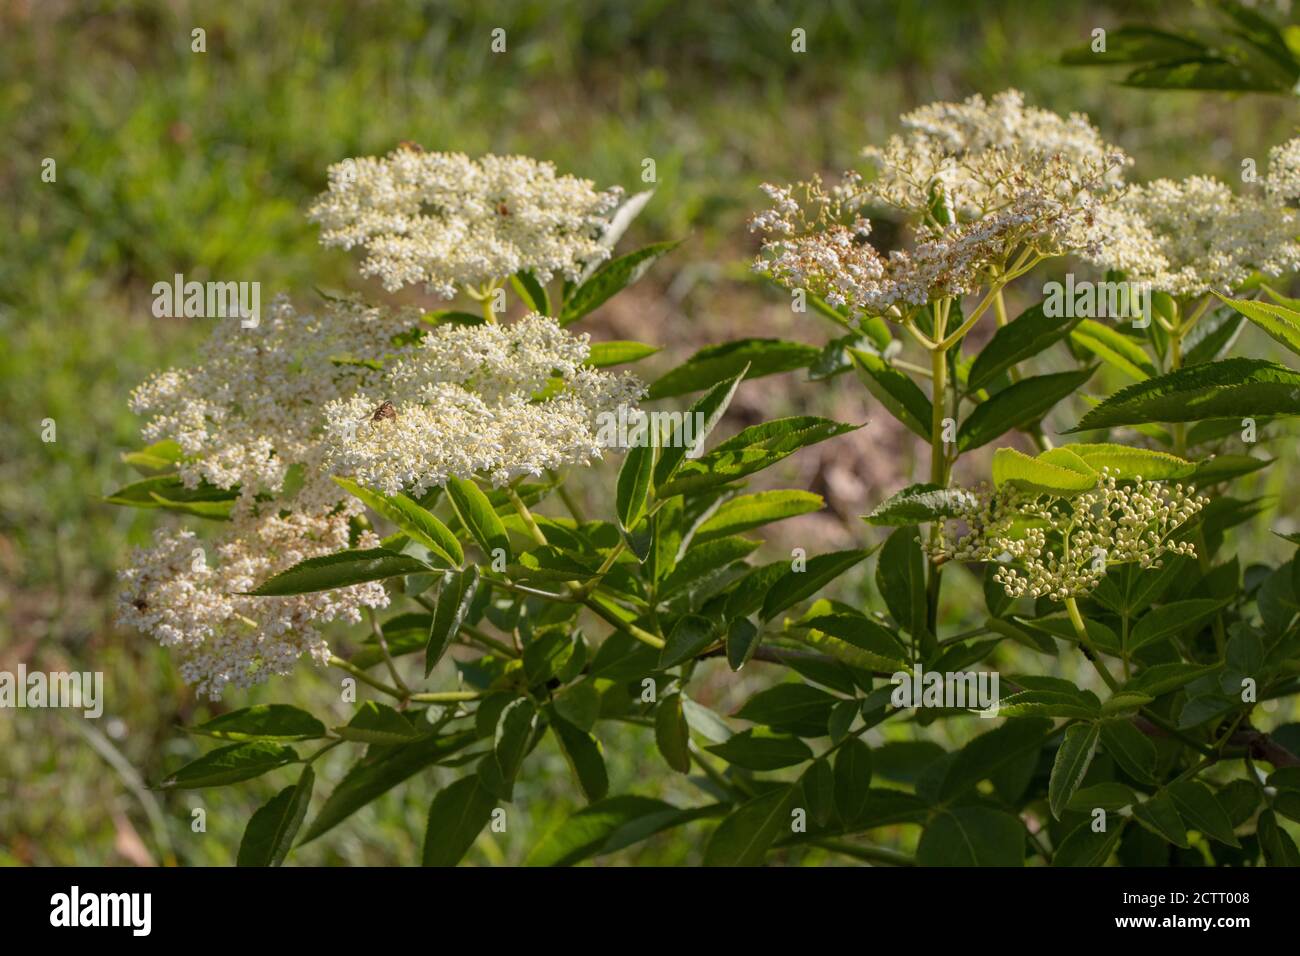 Elder (Sambucus nigra). Die zahlreichen weißen Blüten bilden einen flachen Kopf, mit einem schweren süßen Duft. Sammlerstück für Wein, oder Blume, Getränk machen. Stockfoto